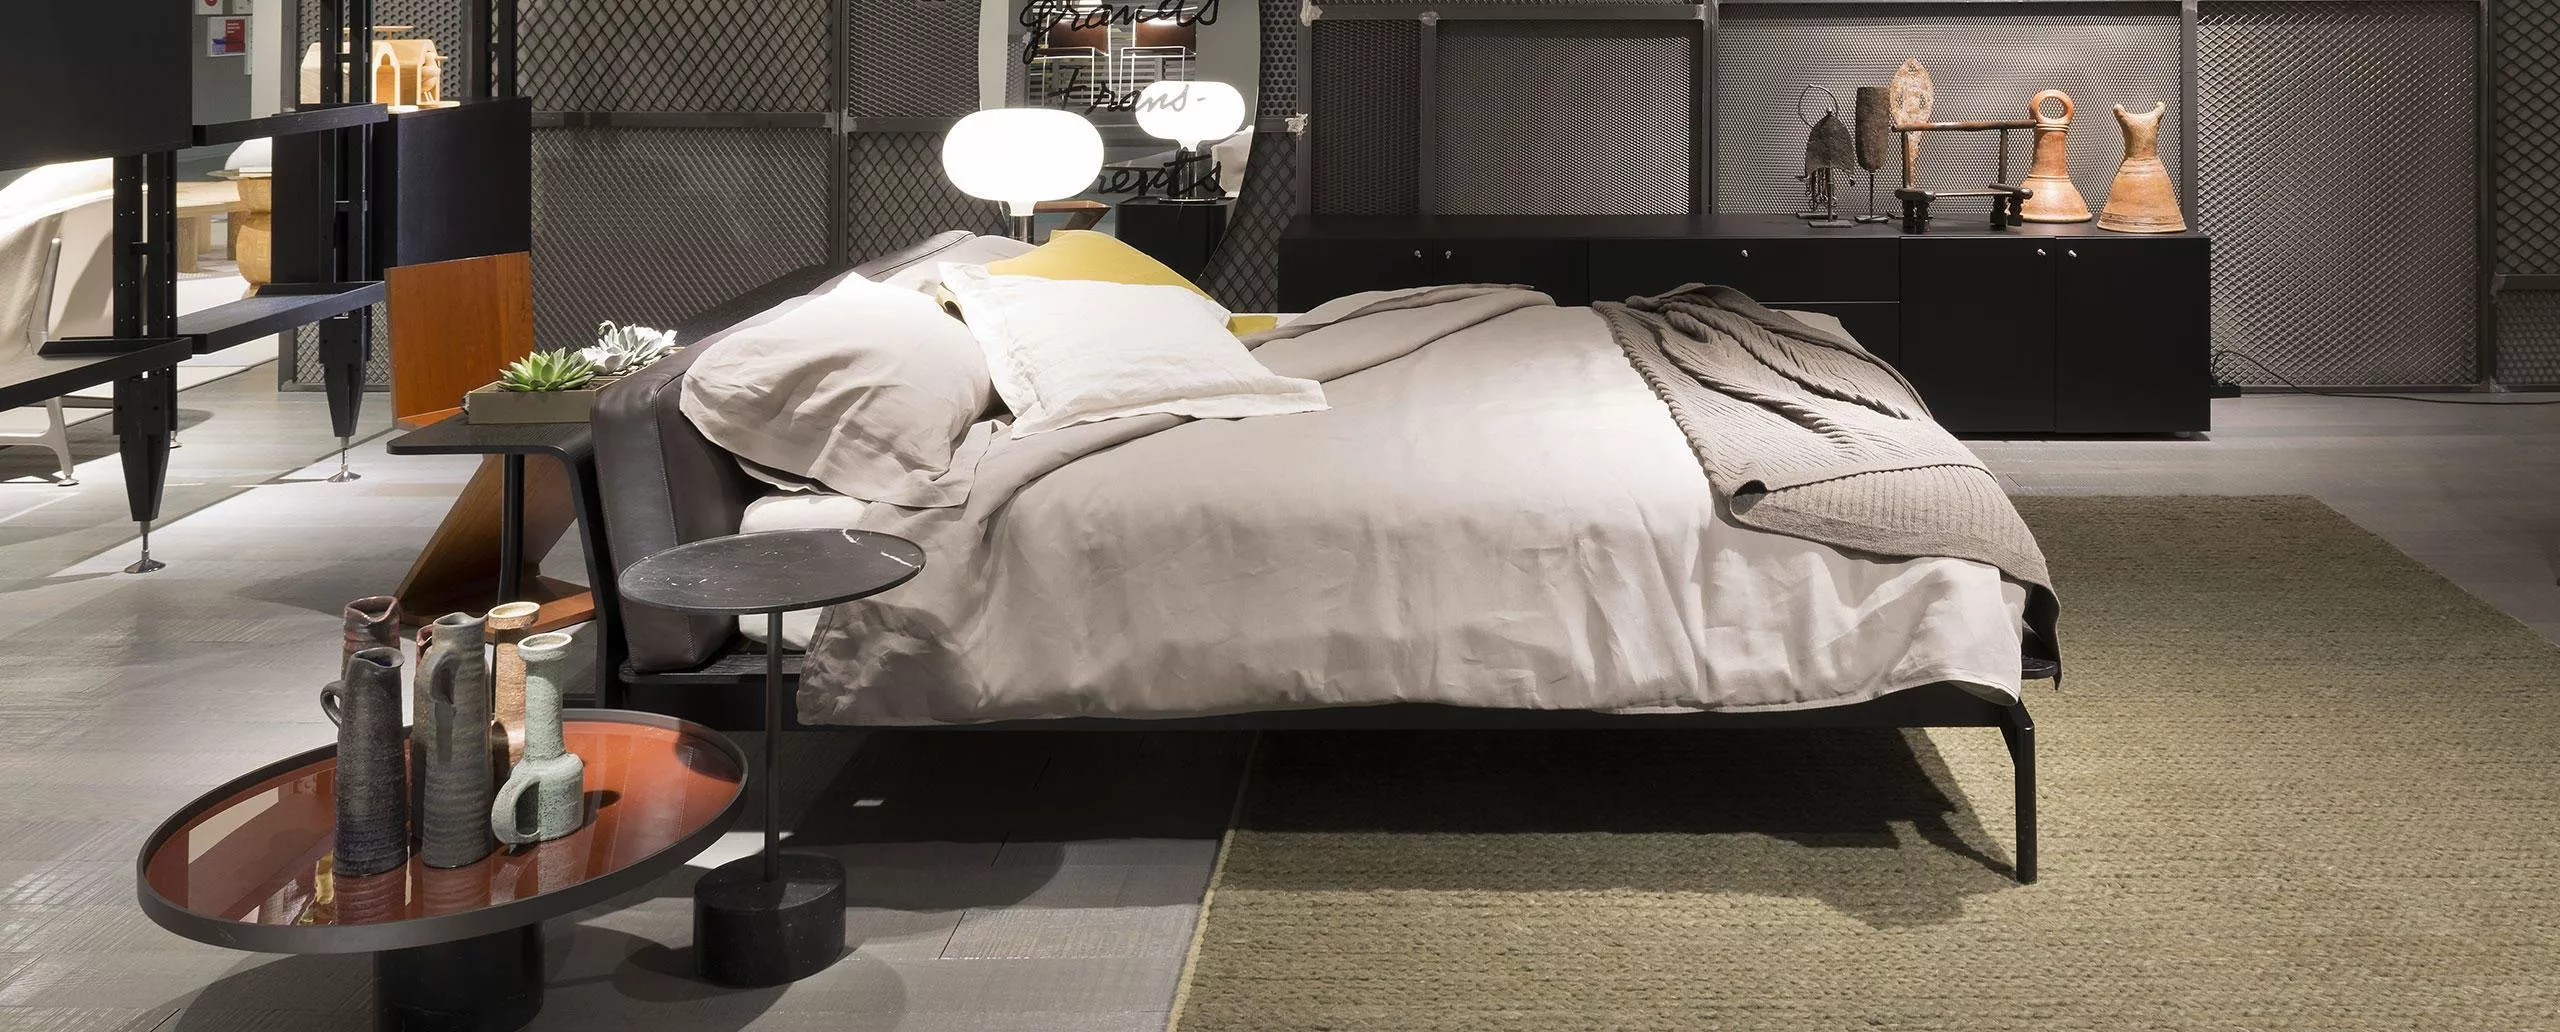 Кровать Sled Cassina L41 — купить по цене фабрики